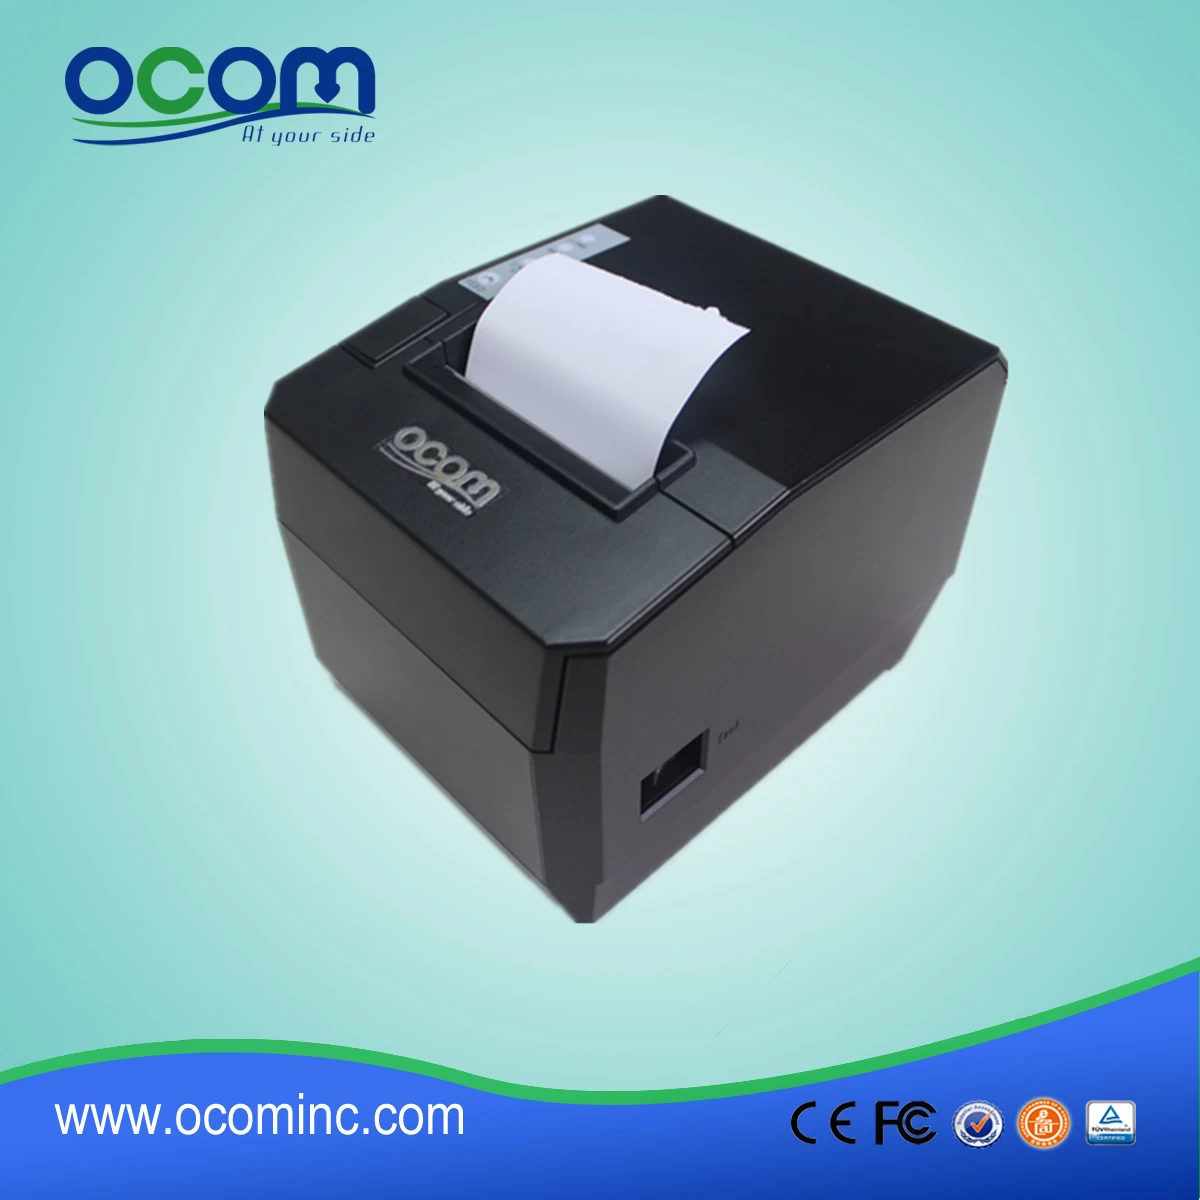 80mm USB Thermal Receipt Printer OCPP-88A-U